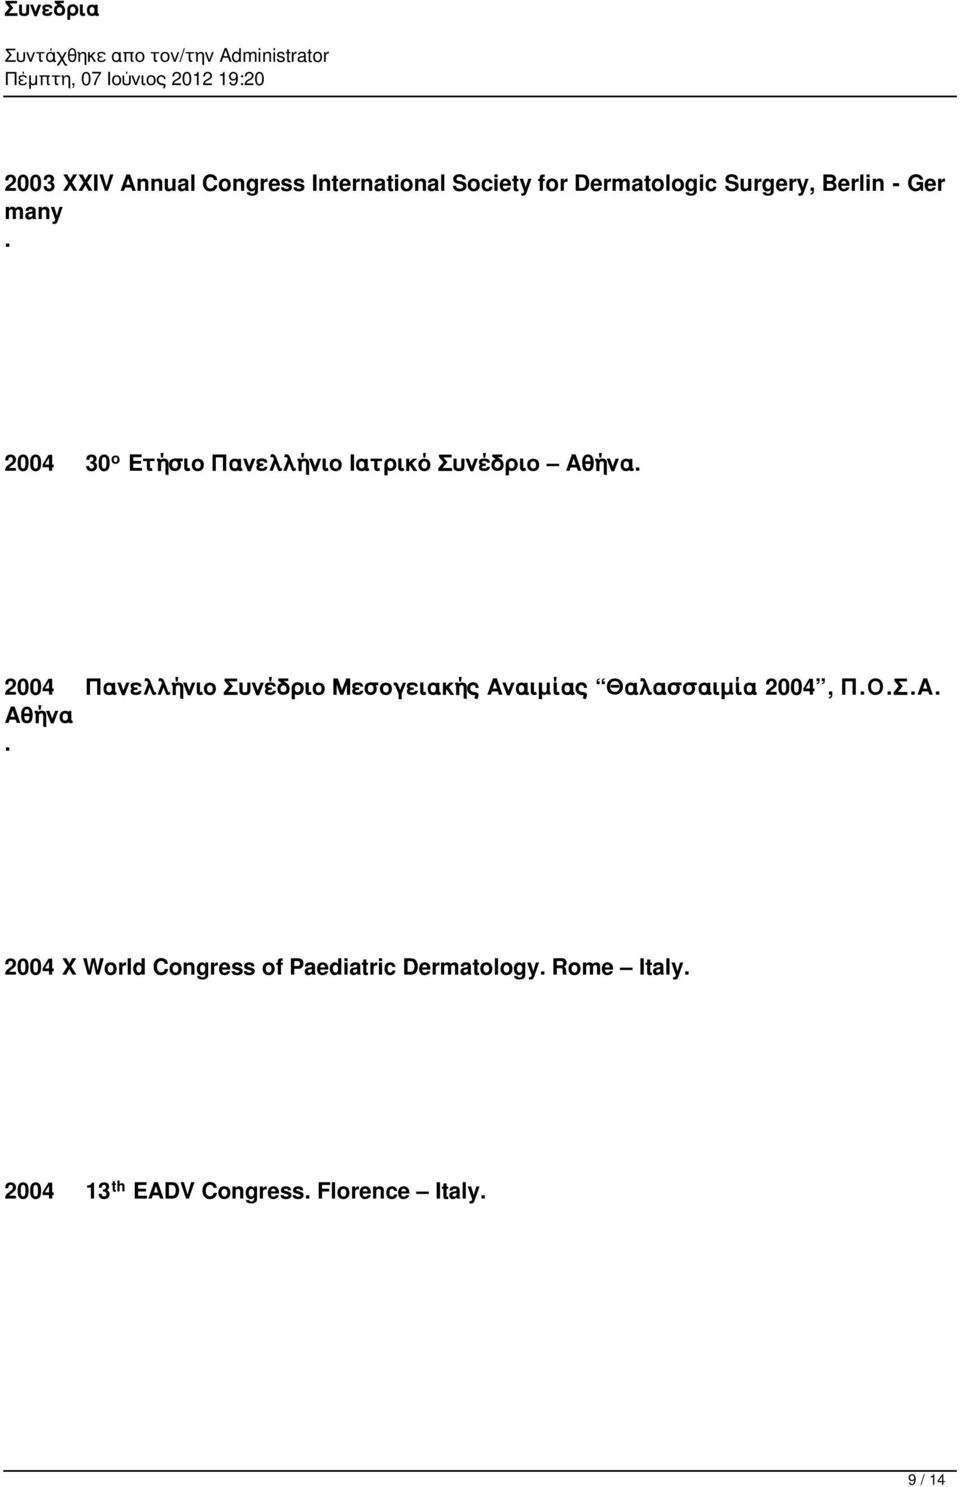 2004 Πανελλήνιο Συνέδριο Μεσογειακής Αναιμίας Θαλασσαιμία 2004, Π.Ο.Σ.Α. Αθήνα.